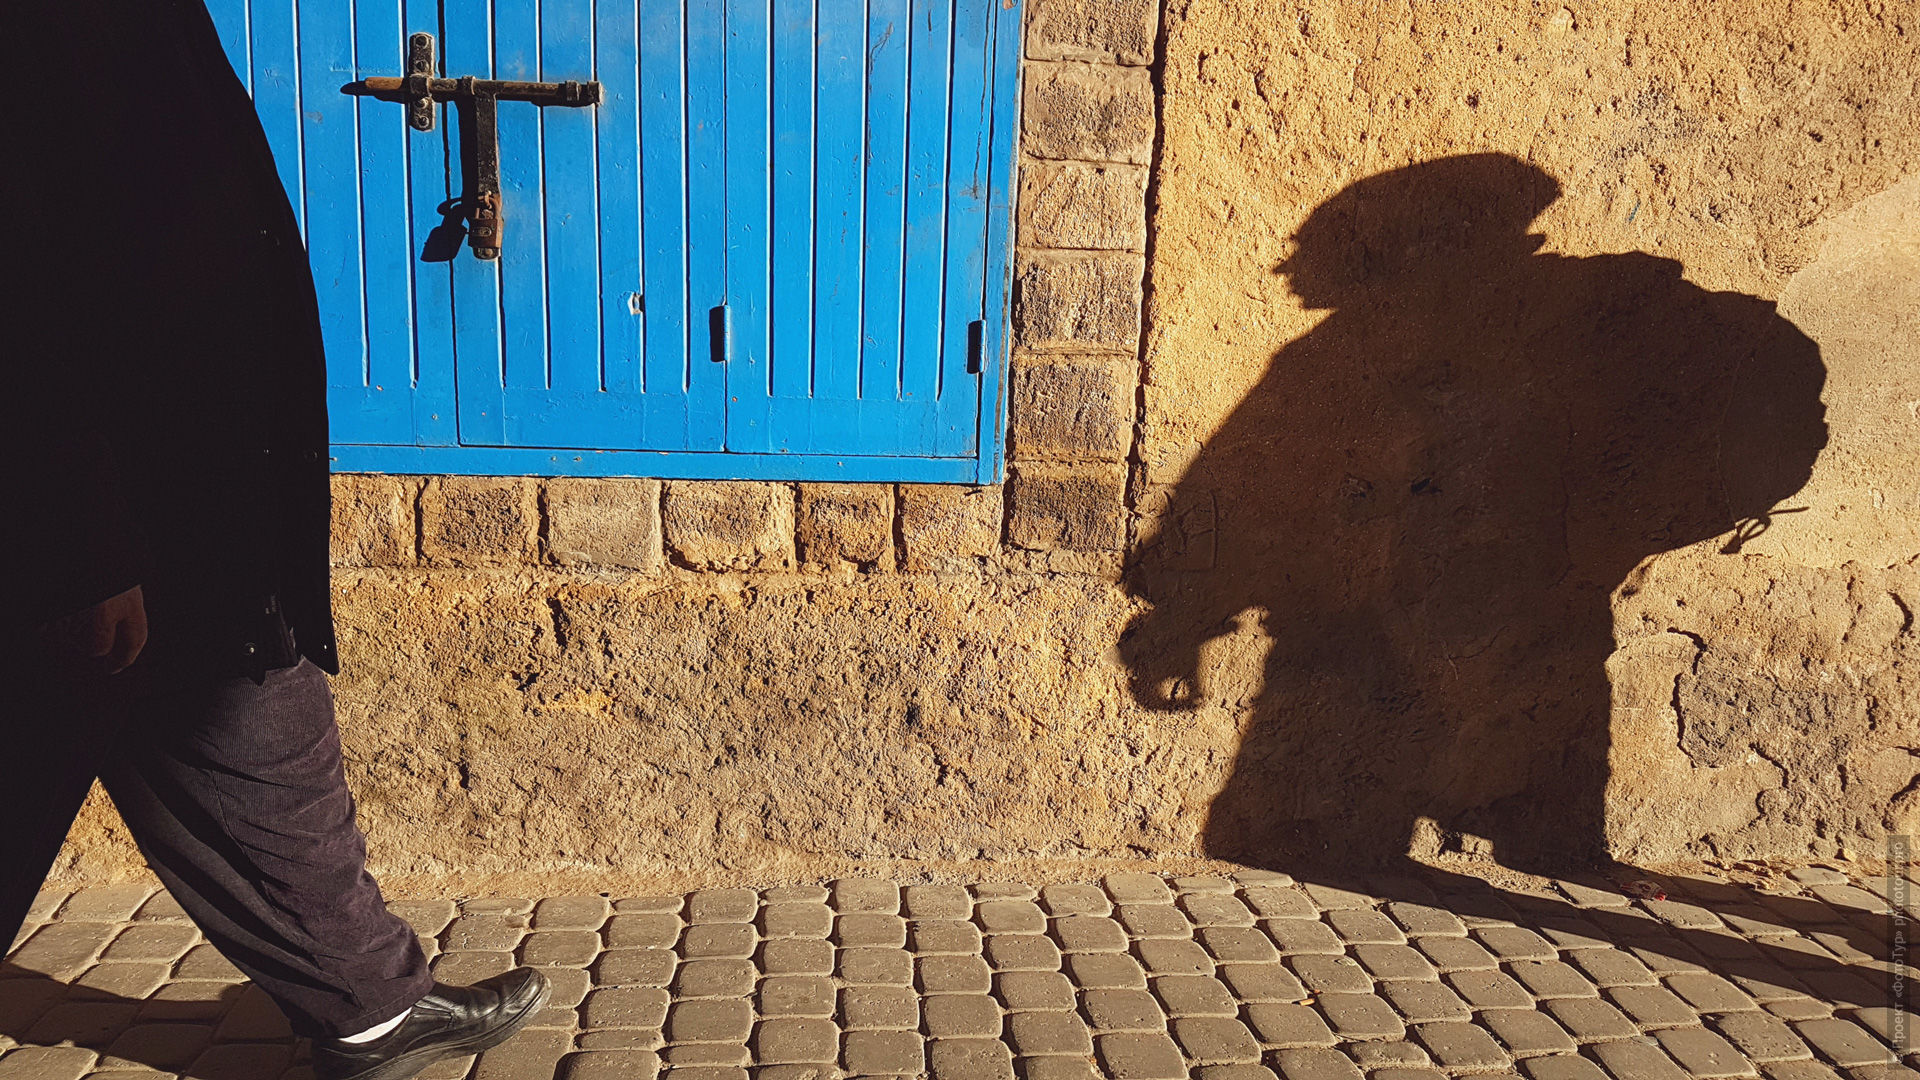 Тур по городу Эль-Джадтда, фототур в Марокко.